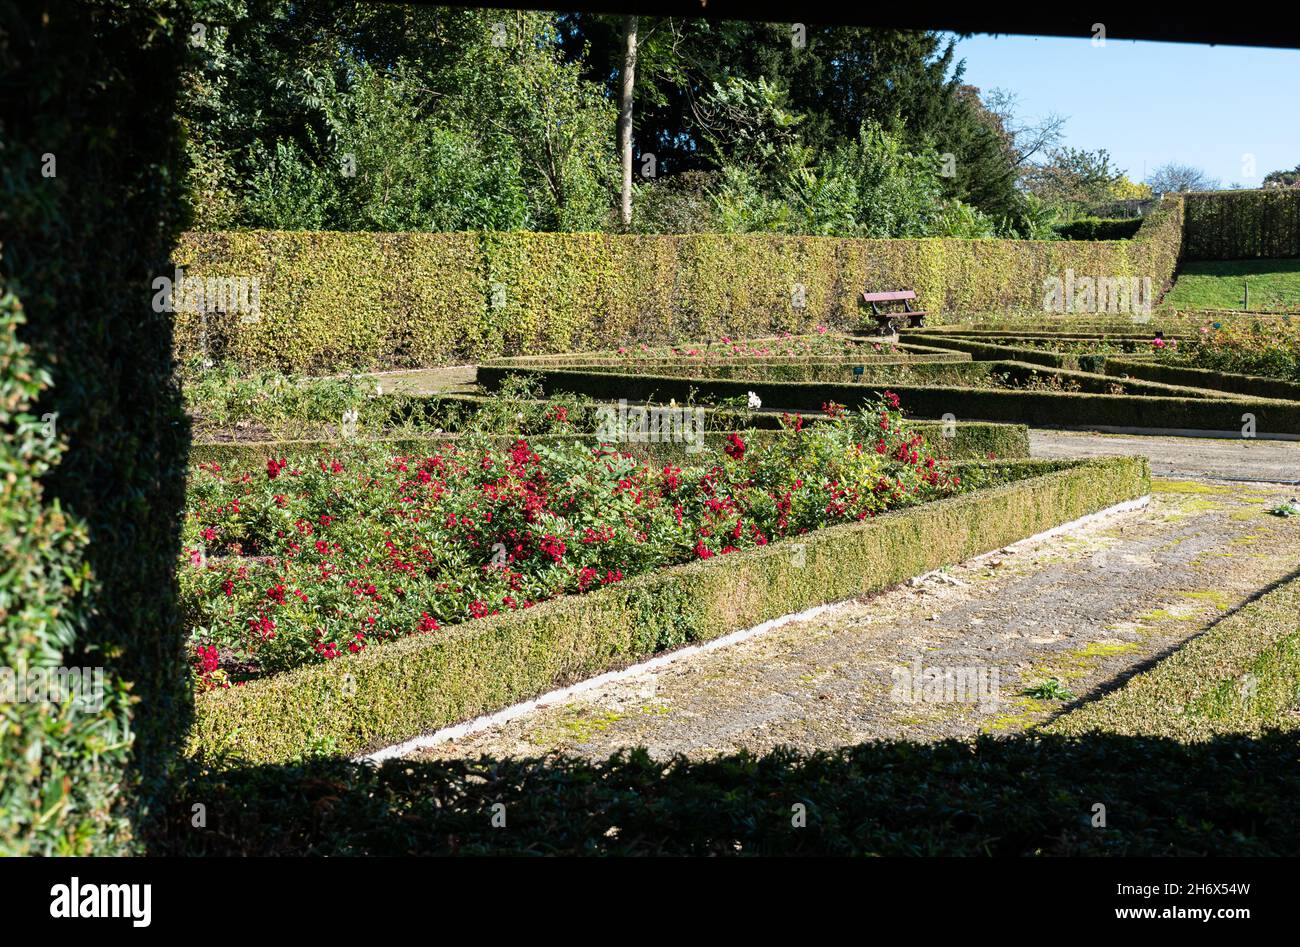 Sint-Pieters-Leeuw, Región Flamenca - Bélgica - 10 17 2021: Entrada del jardín de rosas en el jardín y parque de Coloma Foto de stock